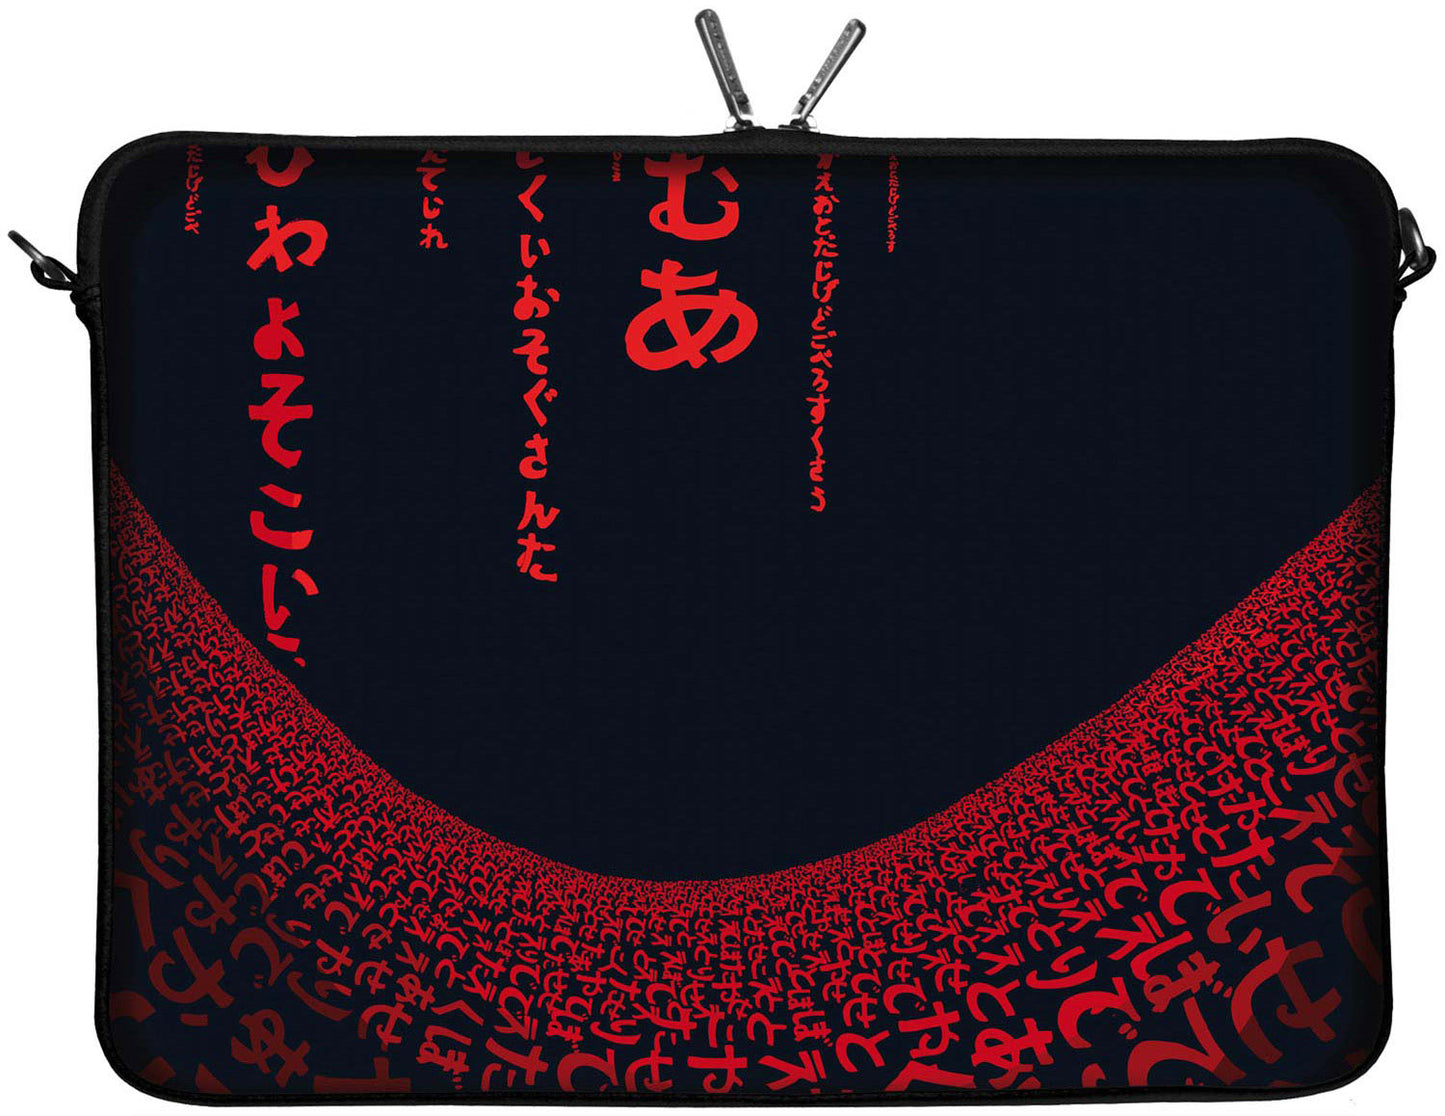 LS109 Red Matrix Designer Laptop Tasche in schwarz für Tablets, Laptops und Macbooks